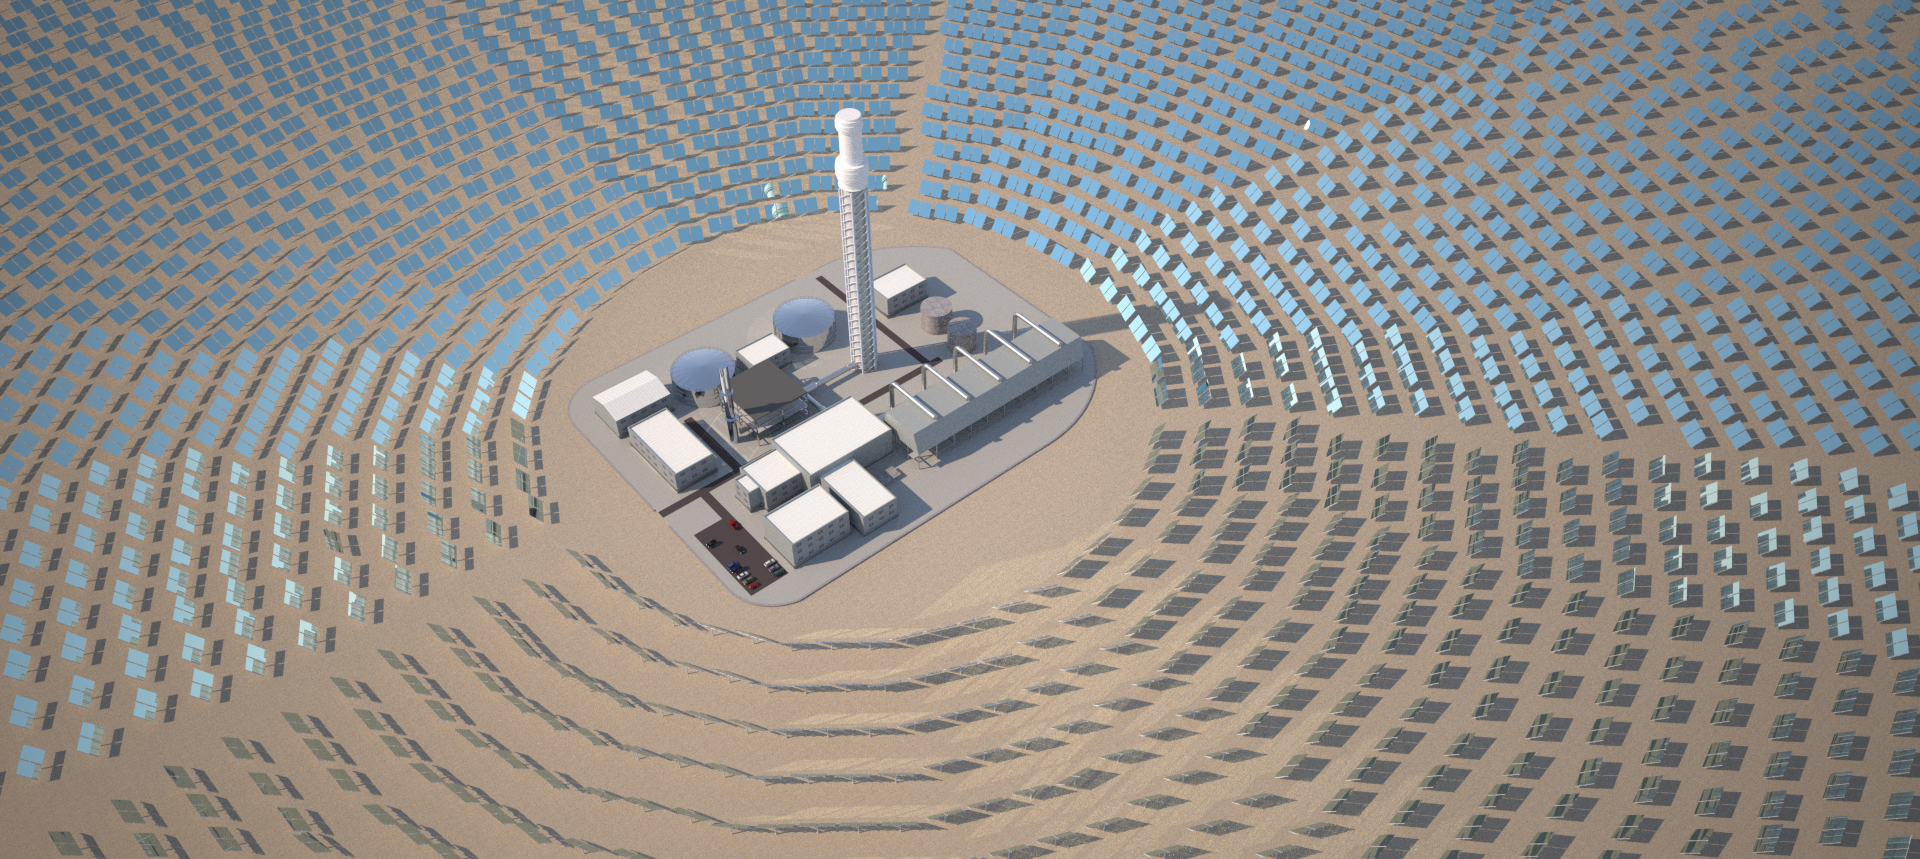 Le potentiel de la Tunisie en énergies renouvelables mis en avant